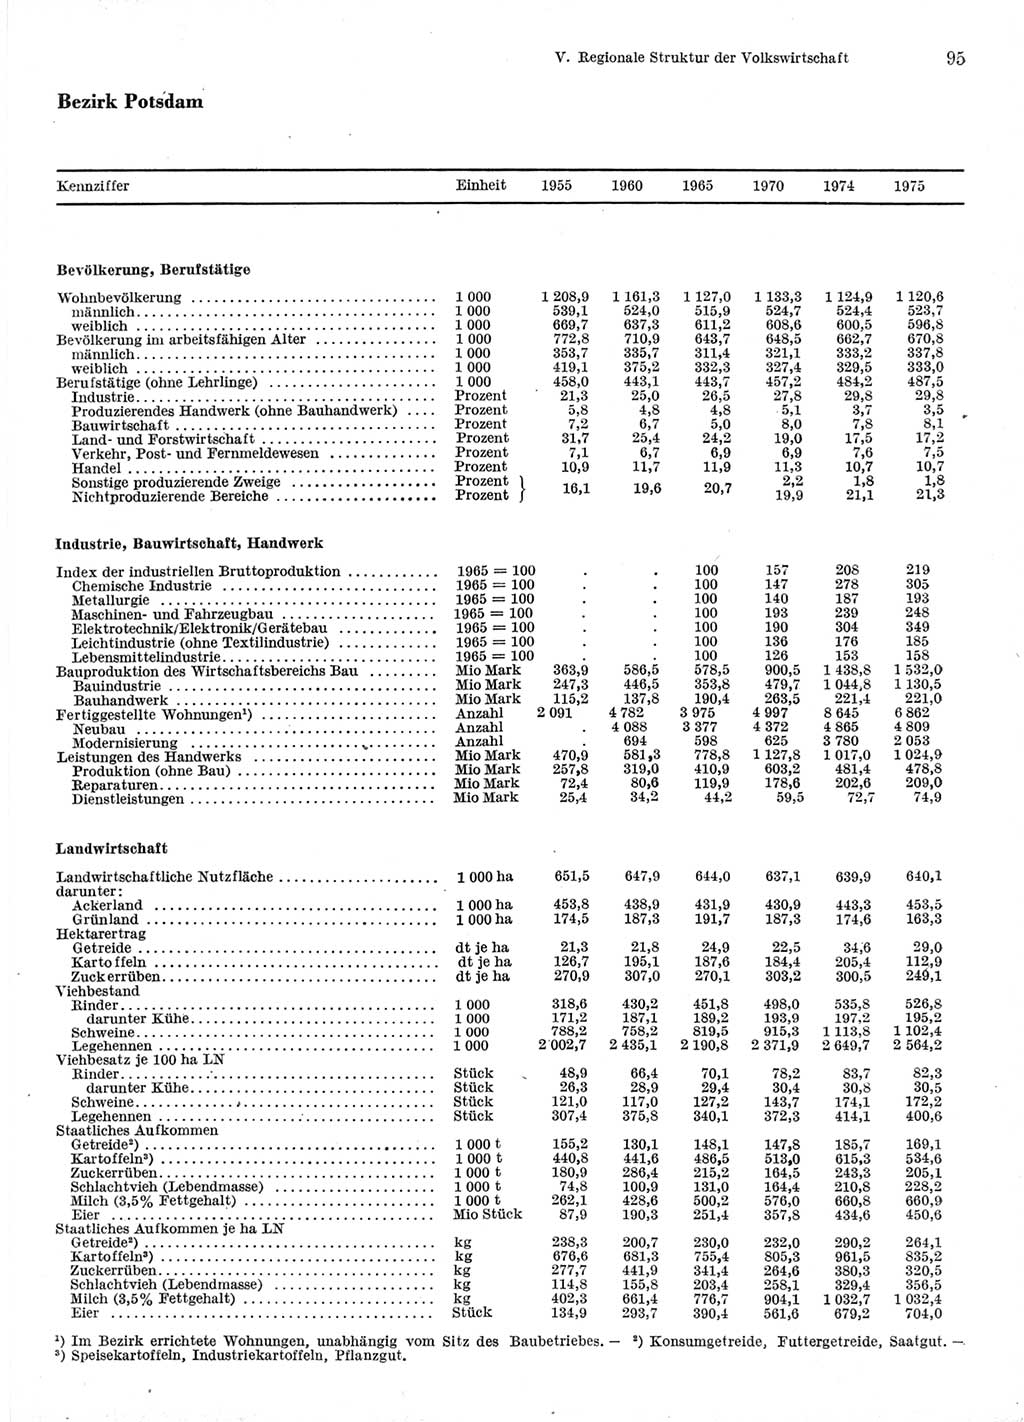 Statistisches Jahrbuch der Deutschen Demokratischen Republik (DDR) 1976, Seite 95 (Stat. Jb. DDR 1976, S. 95)